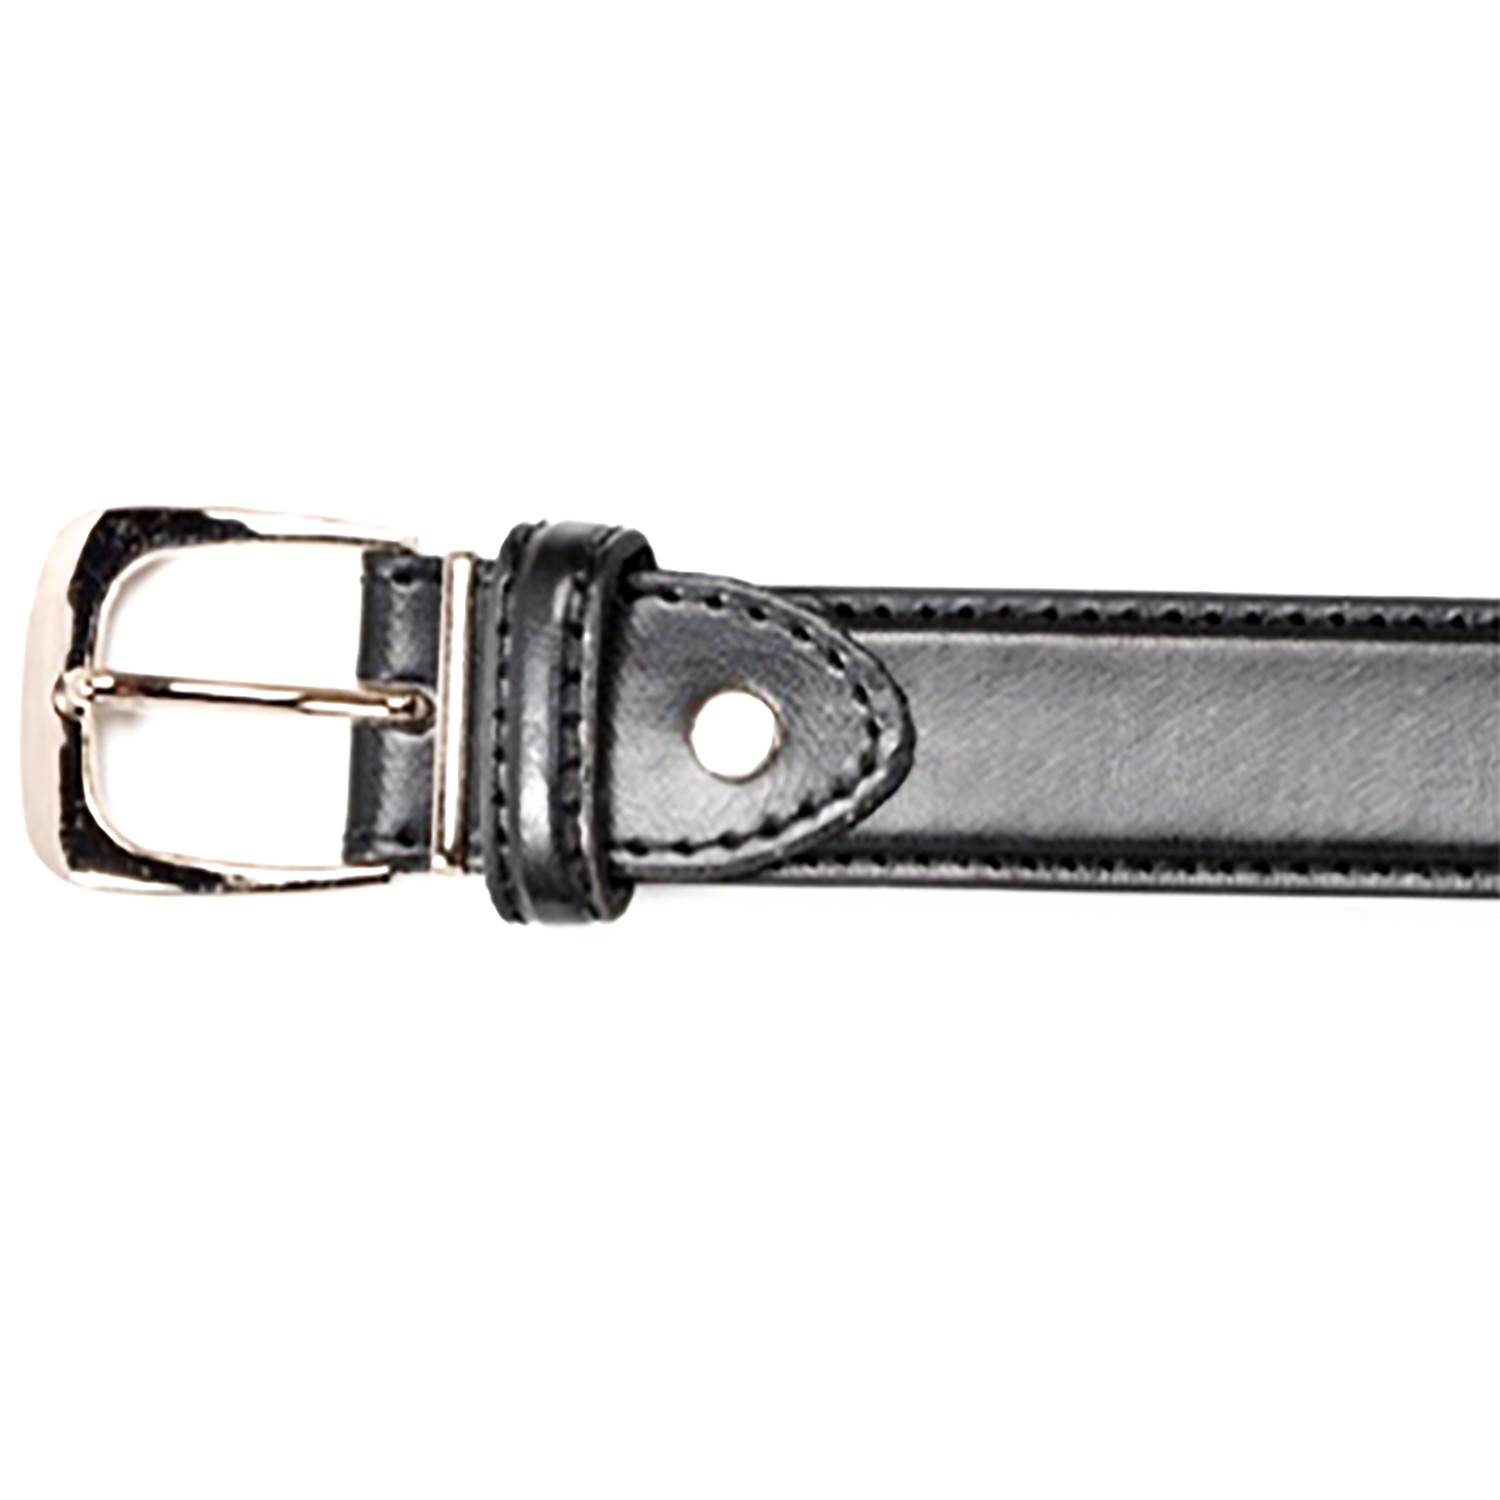 Men's Stylish Black Leather Belt - Black / M Image